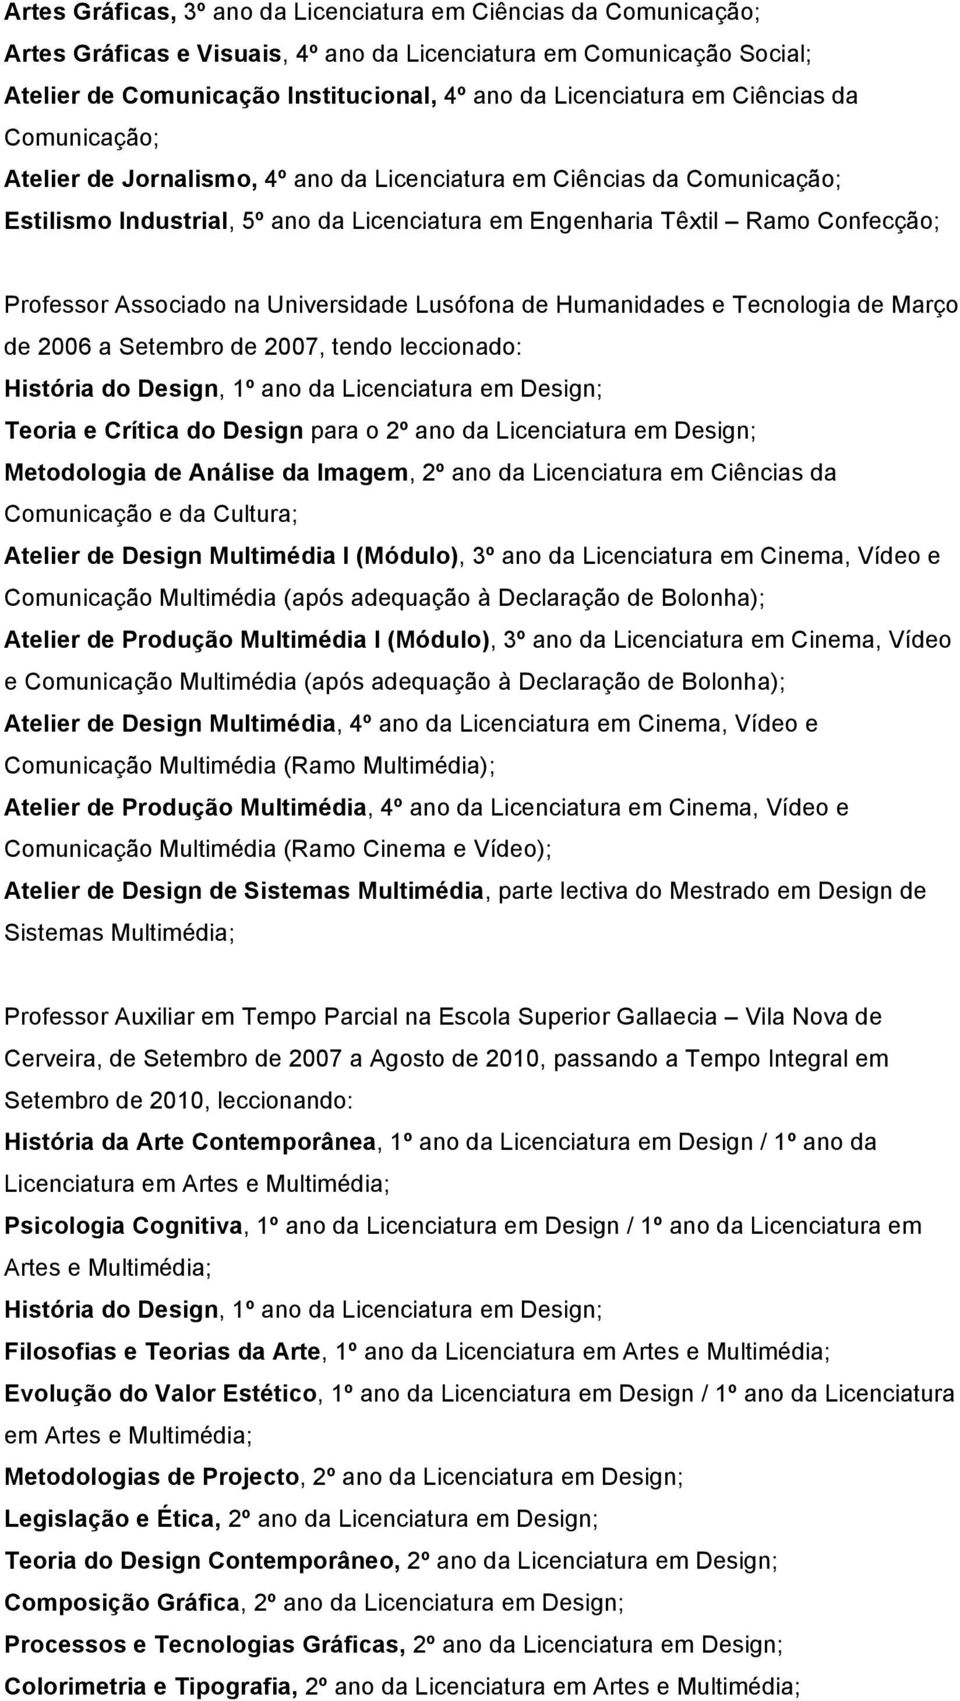 Associado na Universidade Lusófona de Humanidades e Tecnologia de Março de 2006 a Setembro de 2007, tendo leccionado: História do Design, 1º ano da Licenciatura em Design; Teoria e Crítica do Design